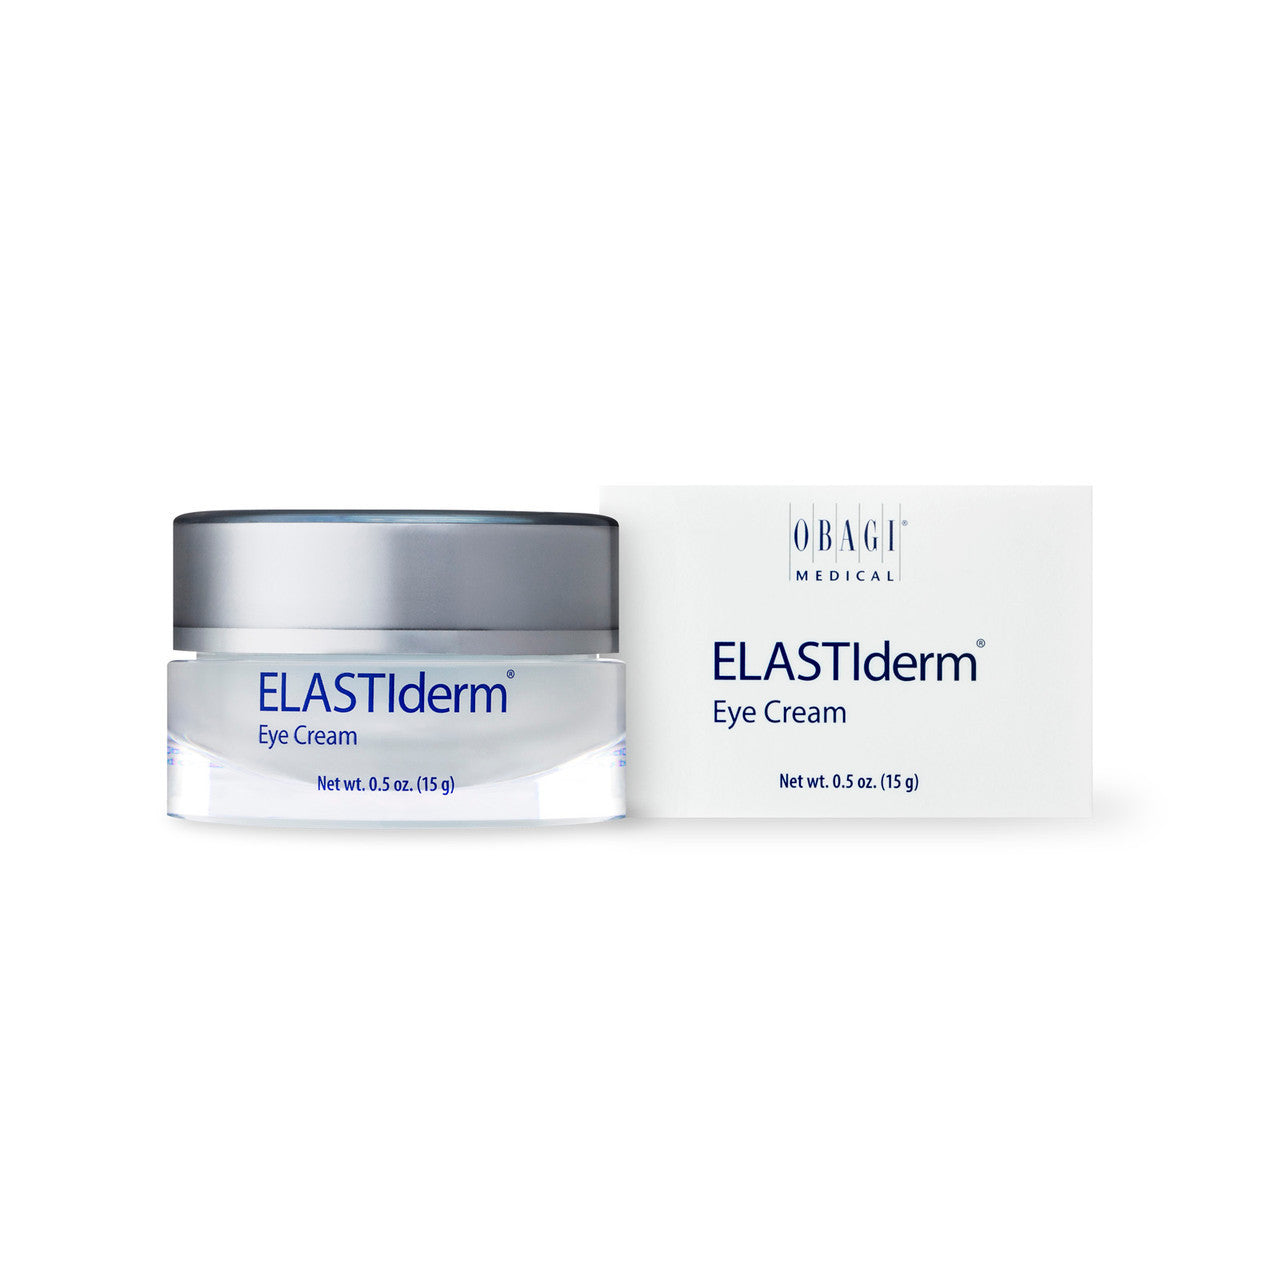 OBAGI ELASTIderm Eye Cream packaging